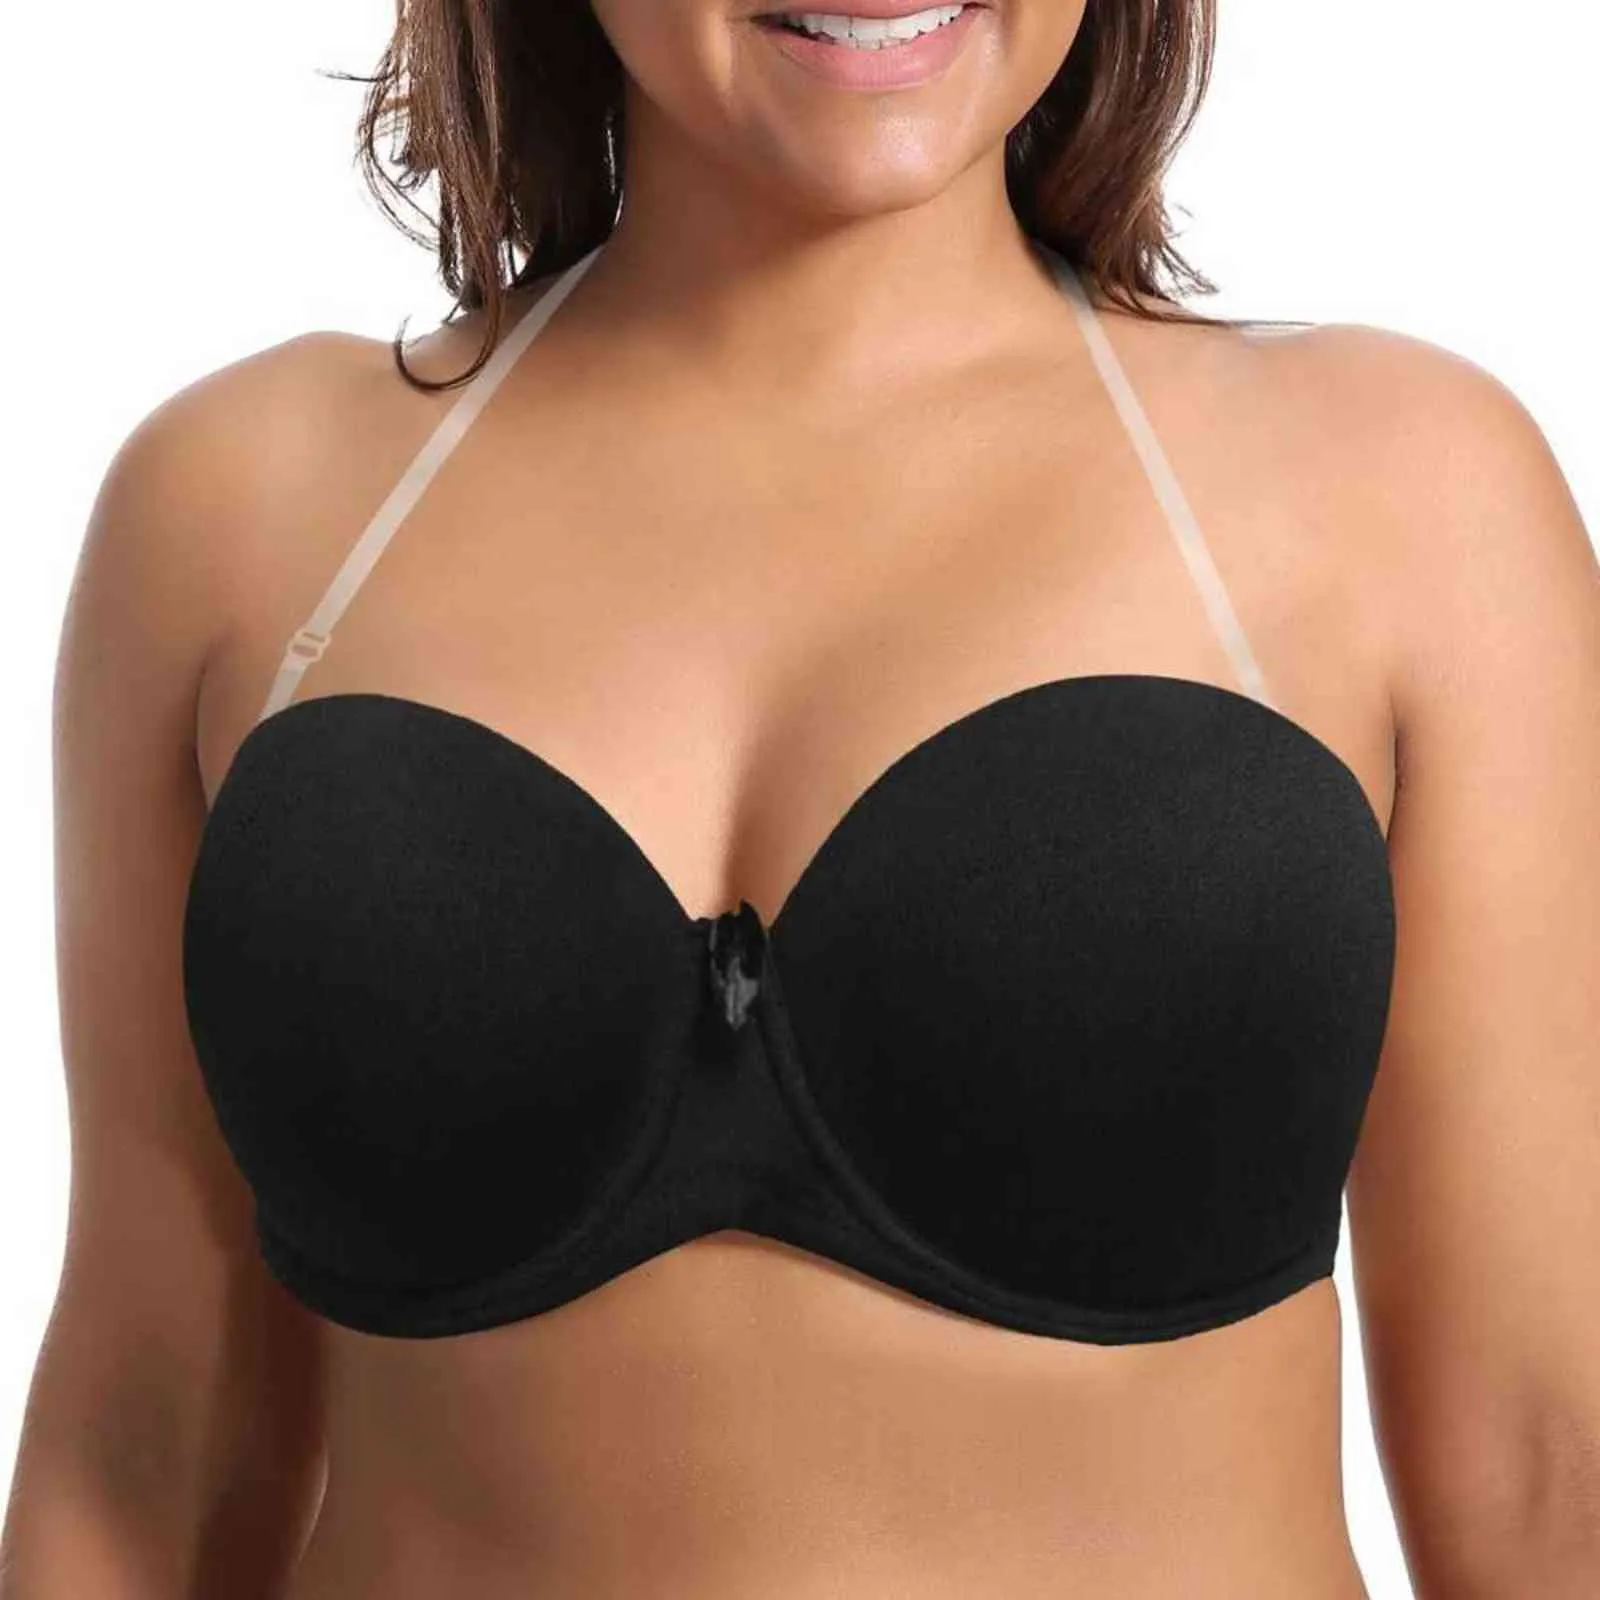 46/105 48/110 50/105 50/115 D E F G Cup Women Plus Size Padded Push Up Bra  Big Breast Underwear Lingerie Brassiere Bralette - AliExpress